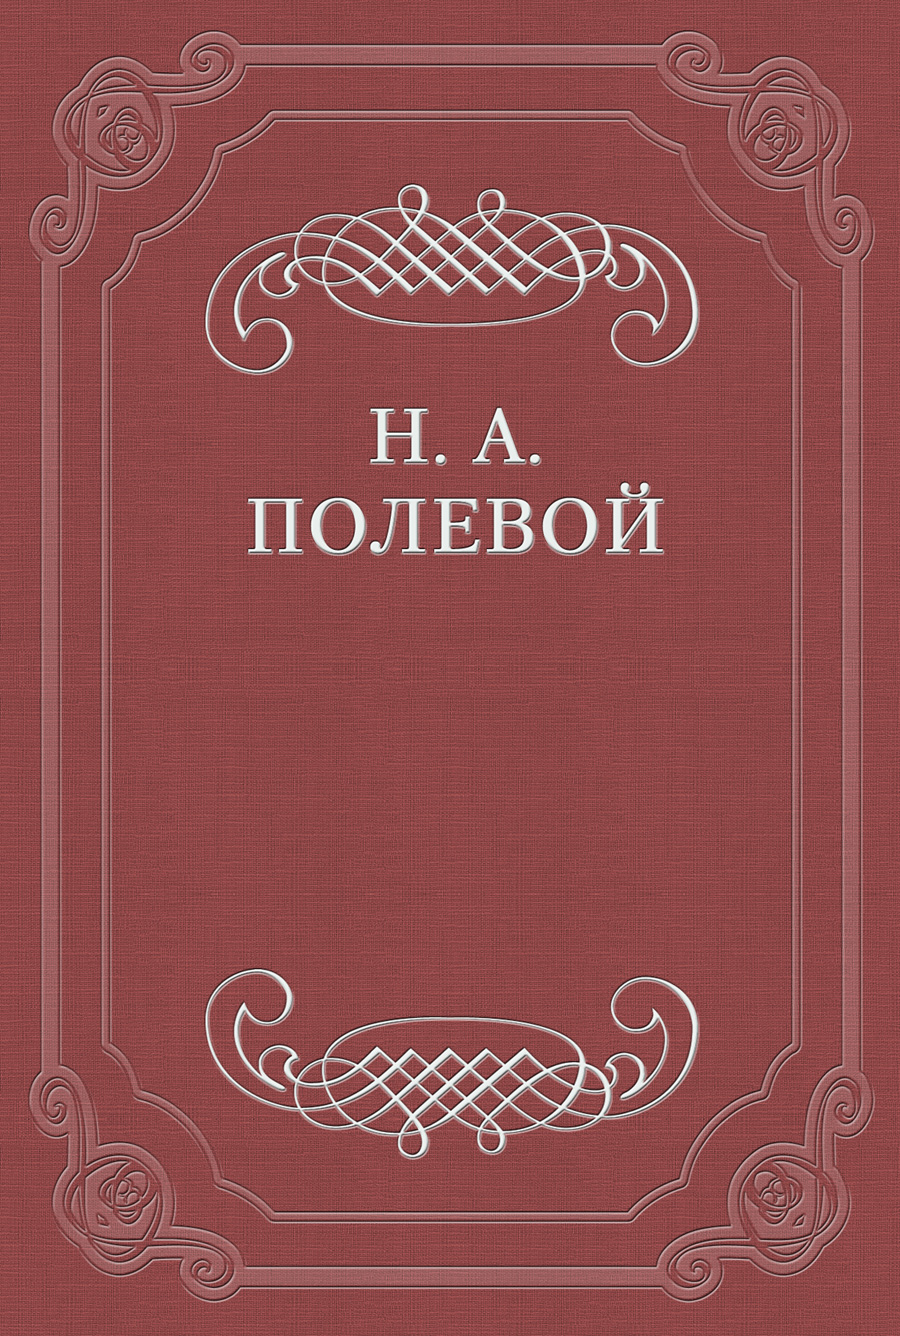 Невский Альманах на 1828 год, изд. Е. Аладьиным